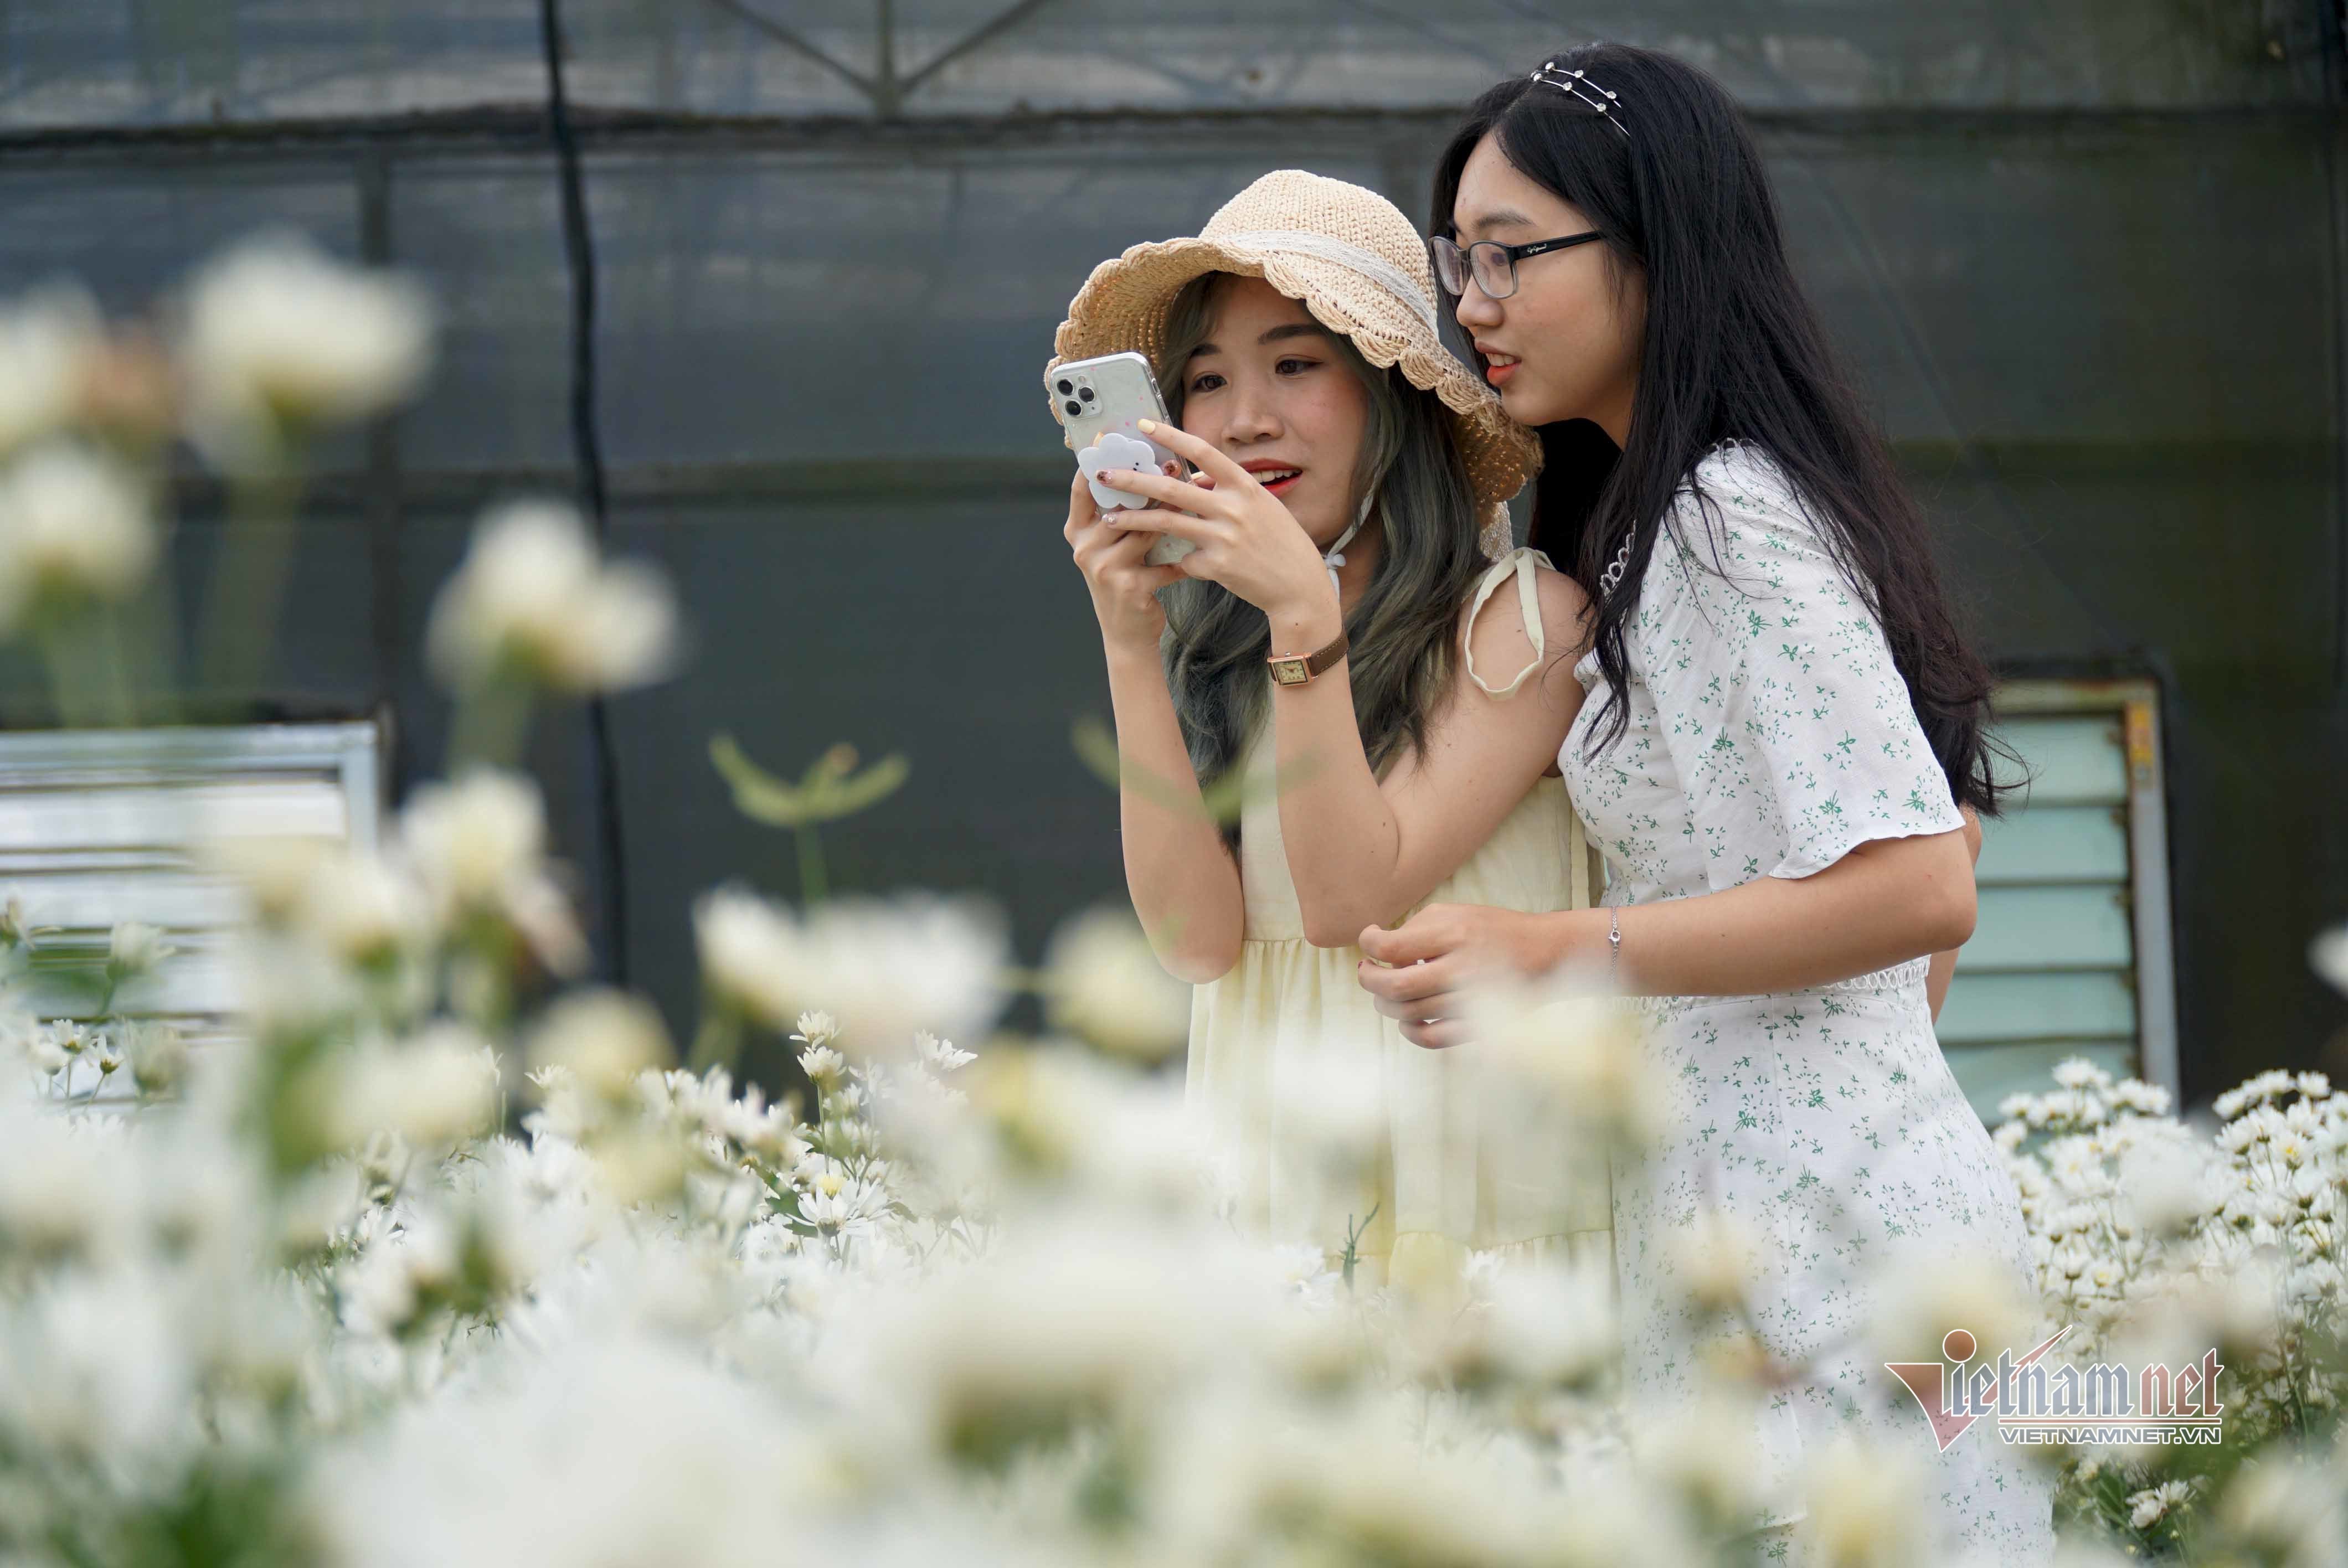 Vườn cúc họa mi 500m2 ở Đà Nẵng nở rộ, giới trẻ đổ xô đến check-in